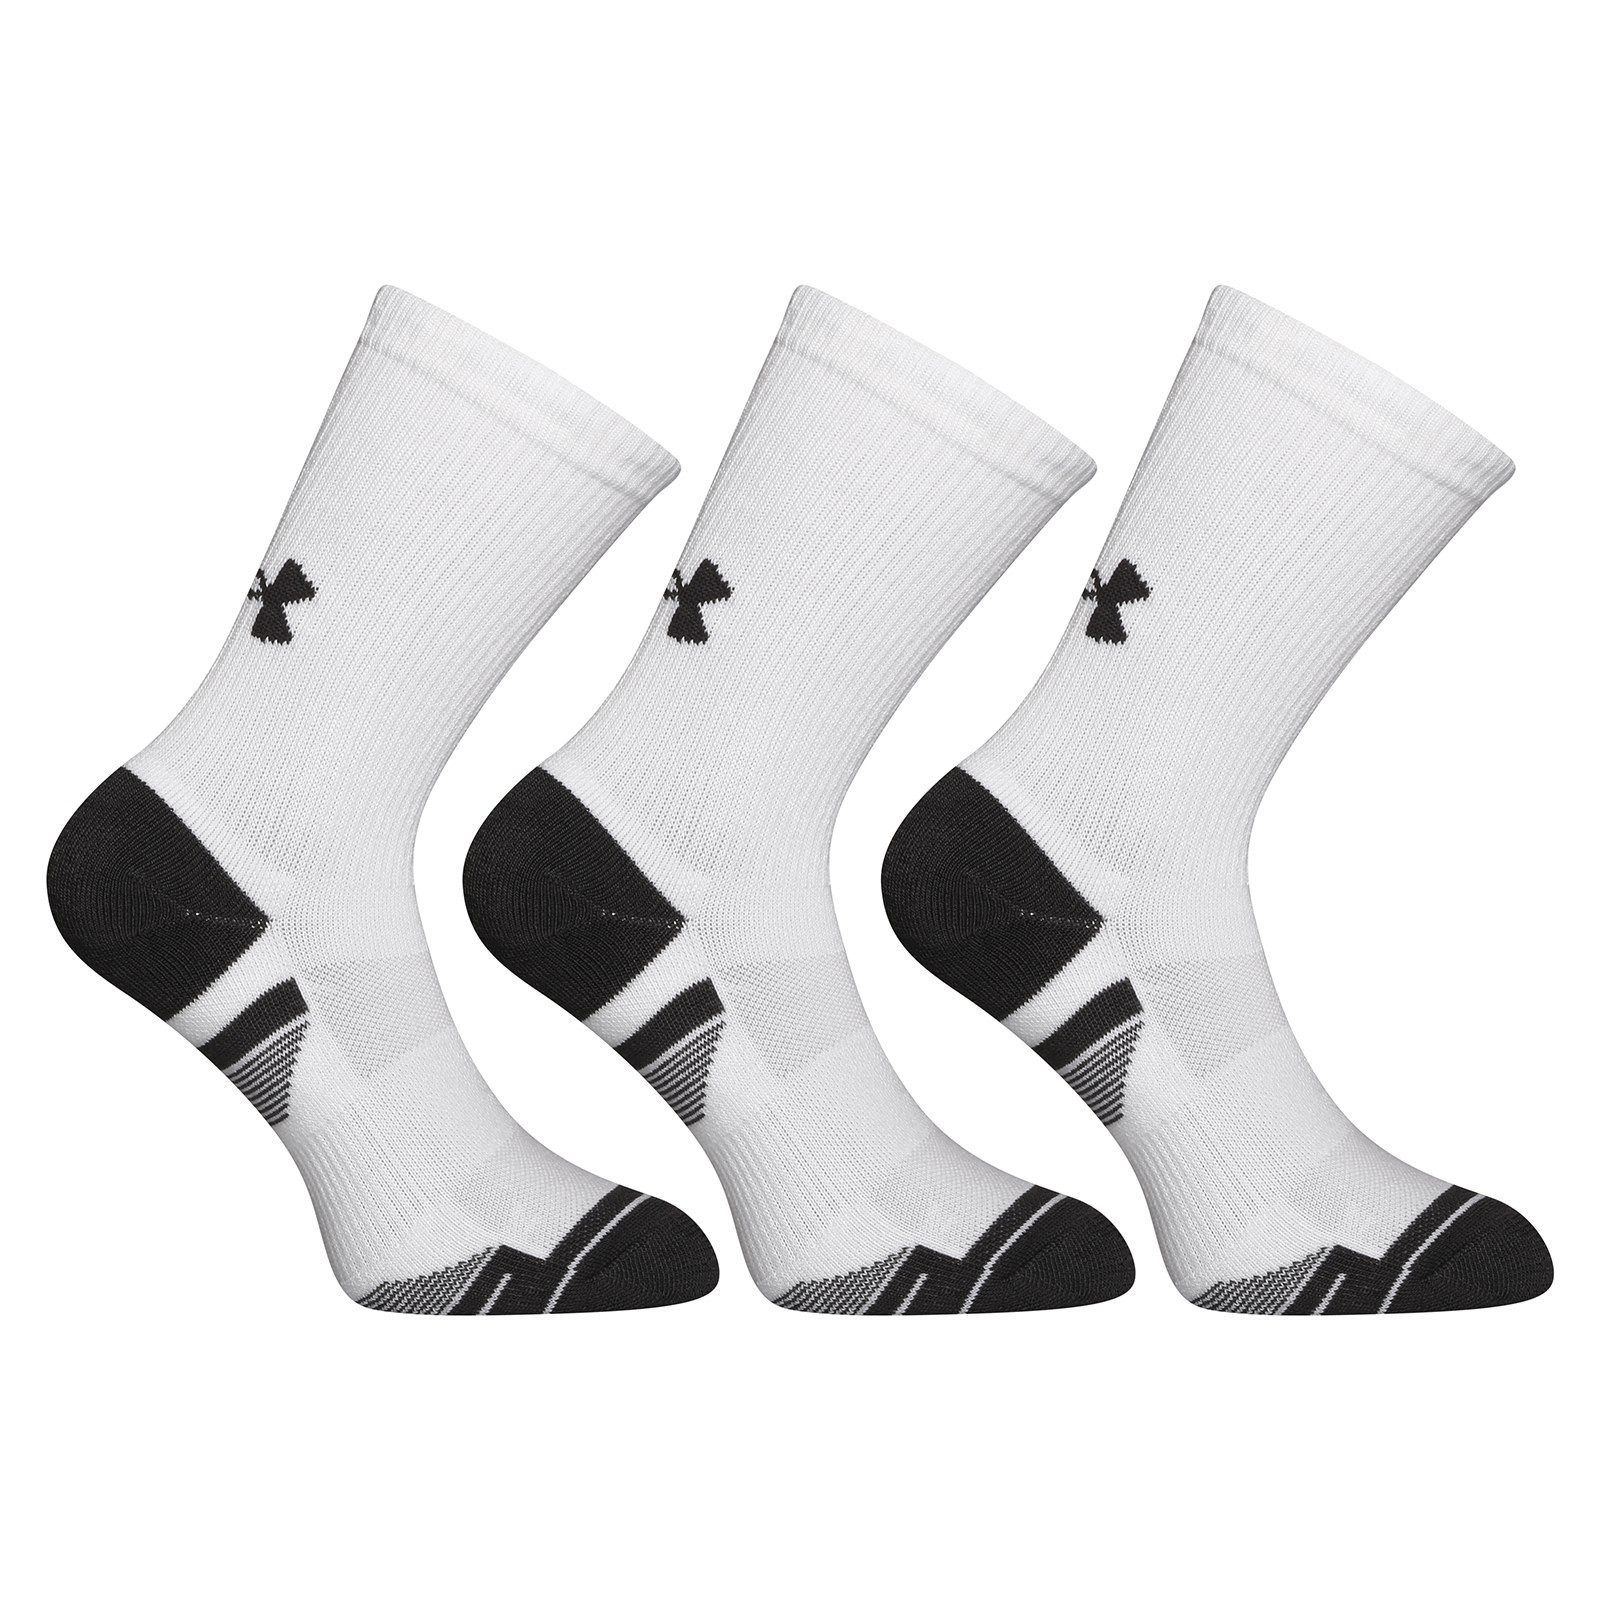 3PACK socks Under Armour white